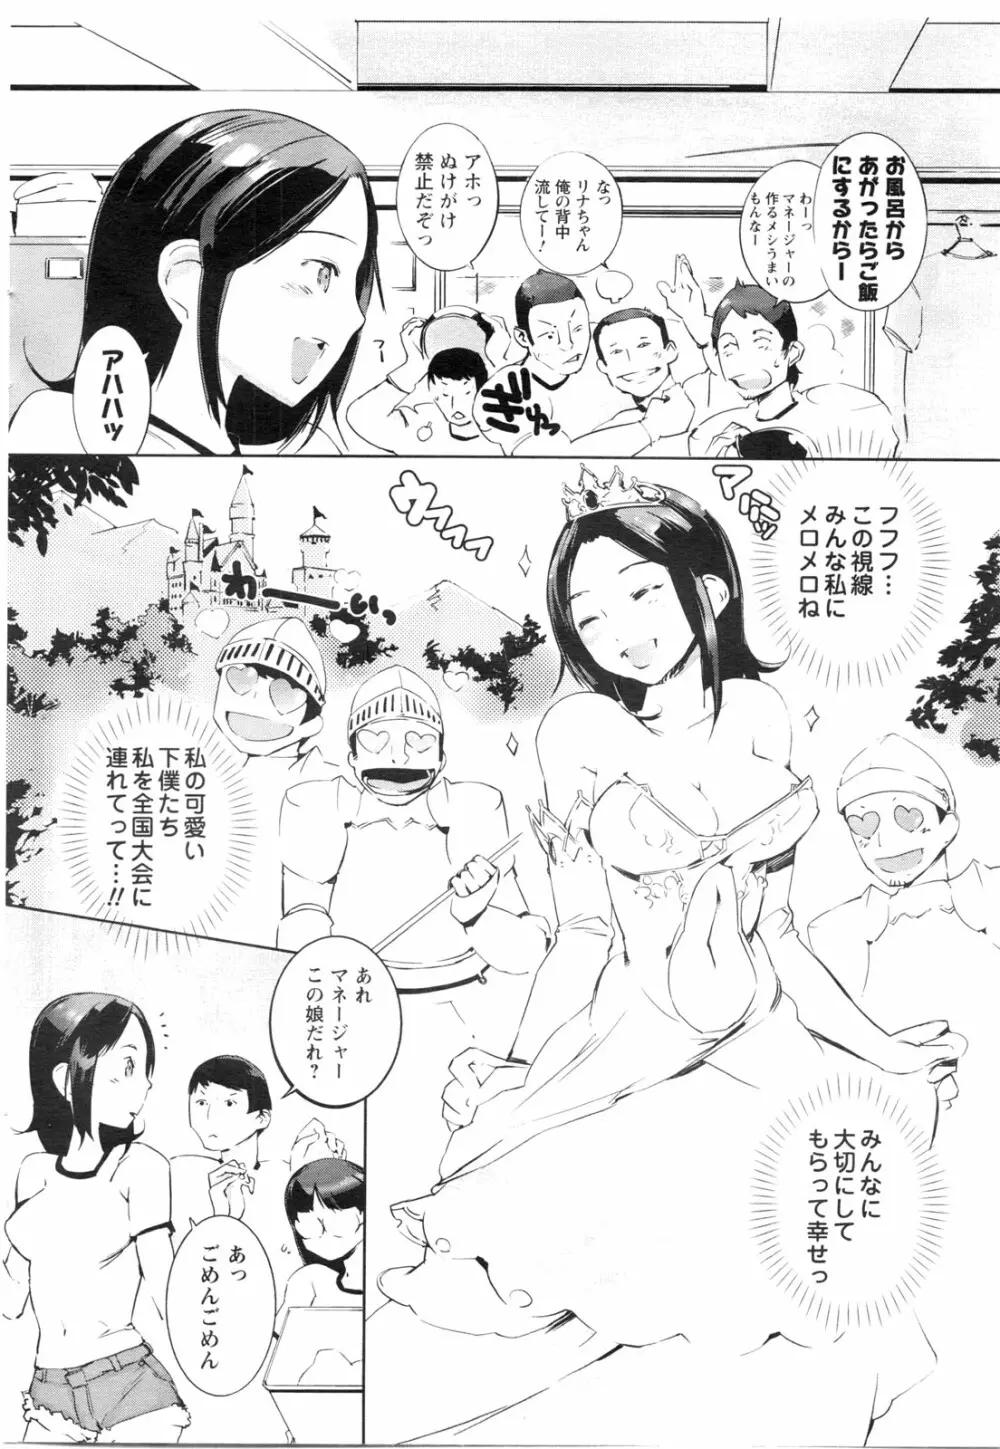 メンズヤングスペシャルIKAZUCHI雷 Vol.13 2010年3月号増刊 31ページ